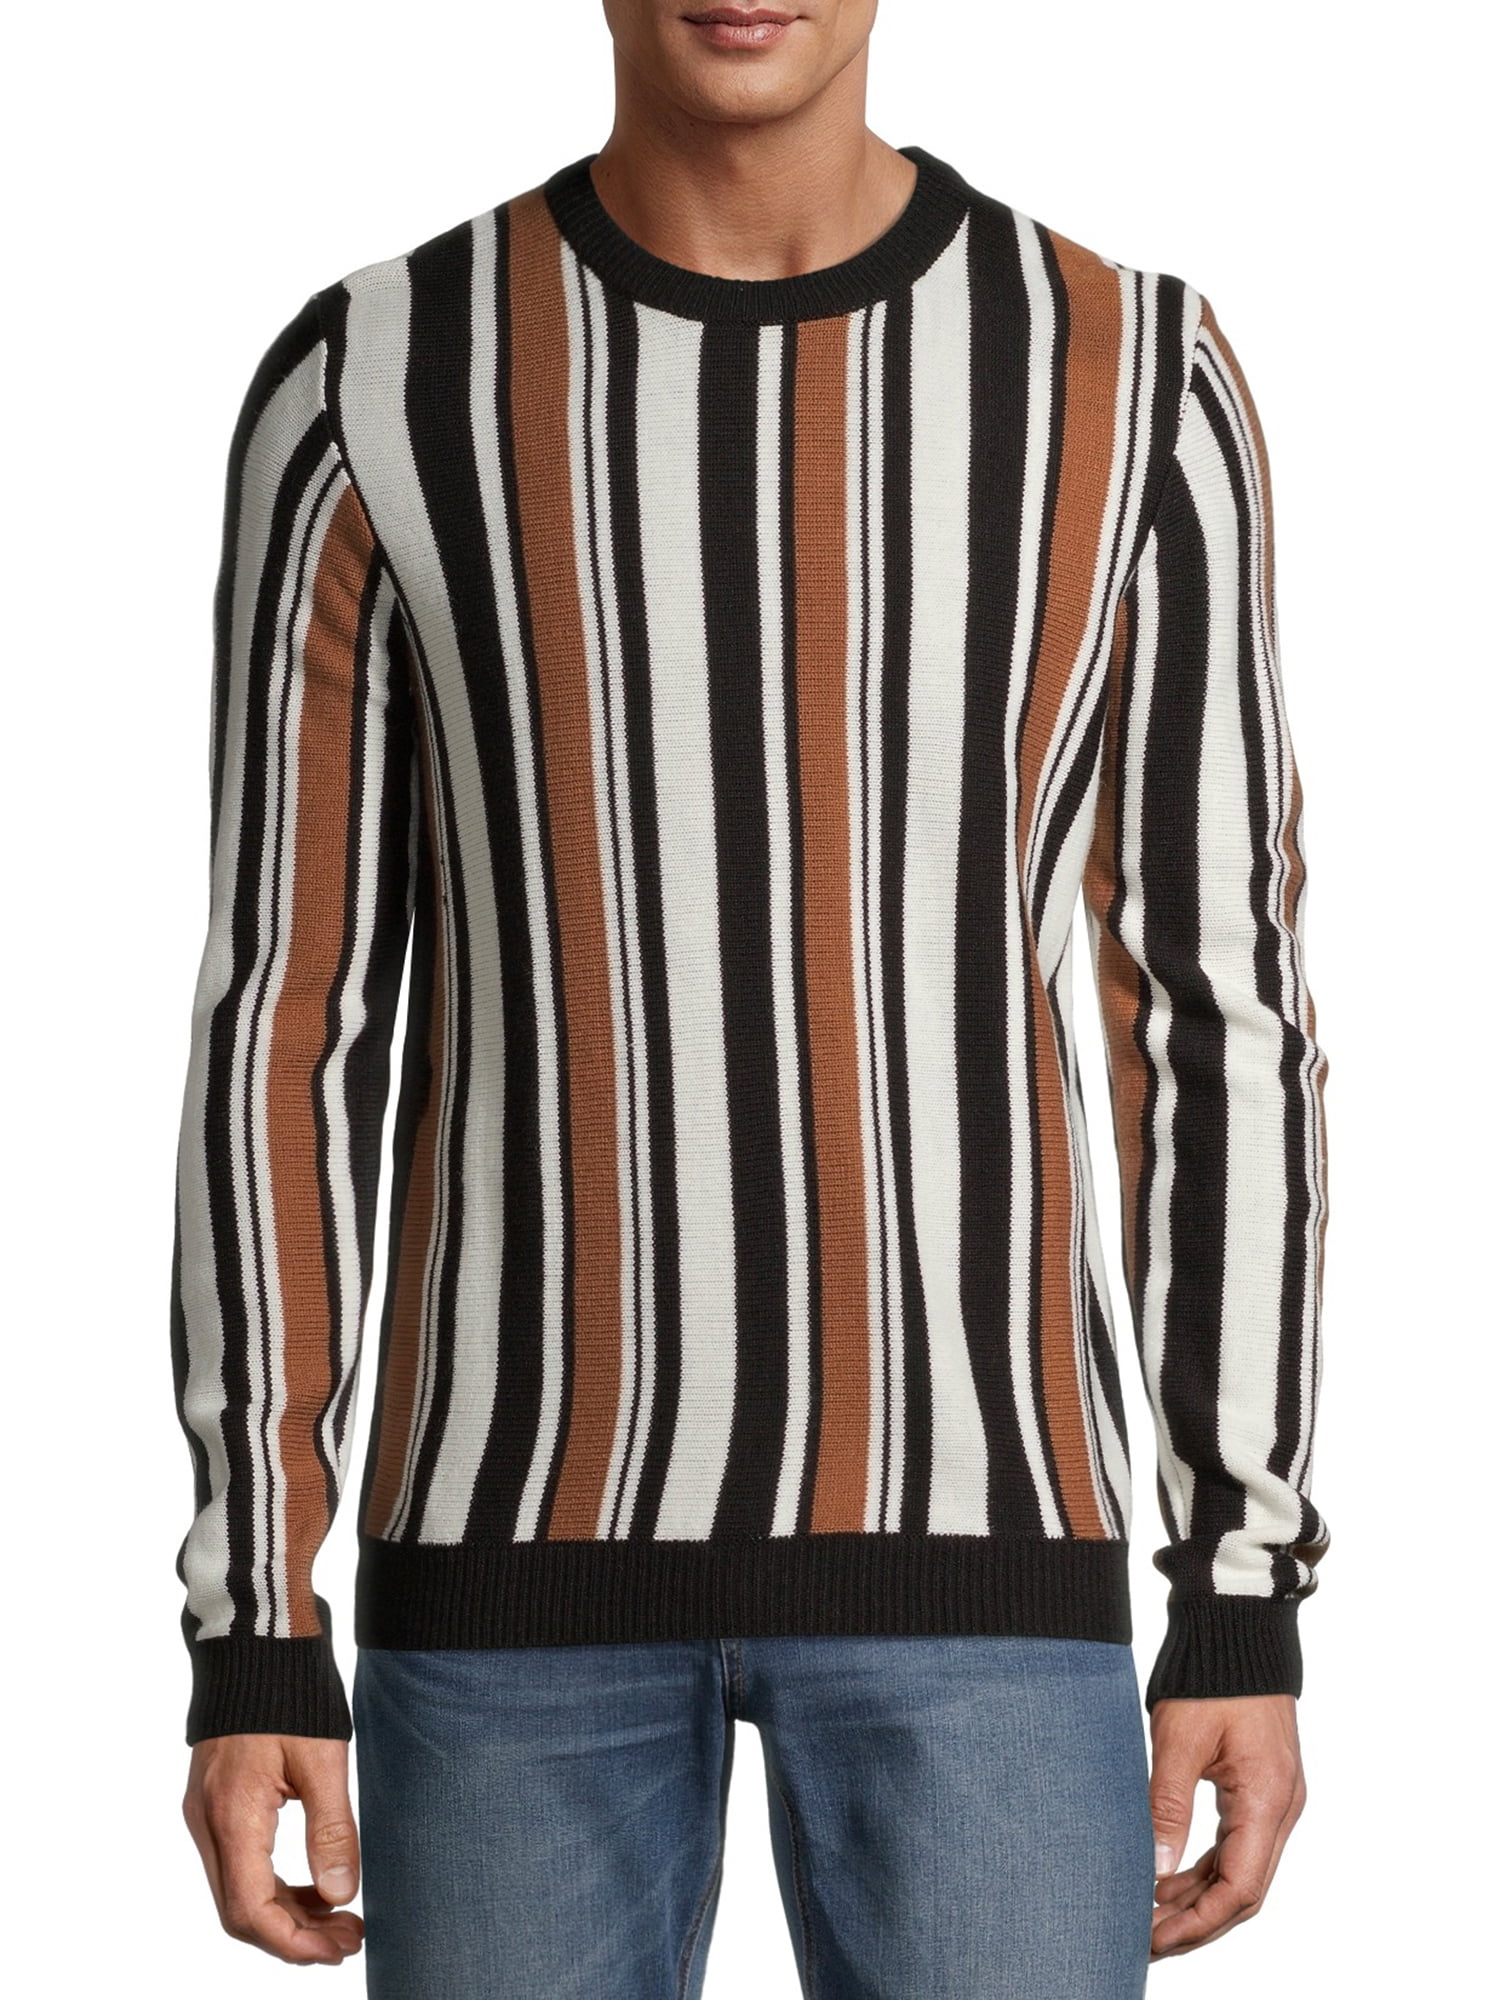 L & XL Burnt Orange  BNWT Men's Chaps Classic-Fit Mockneck Twist Sweater Sizes 